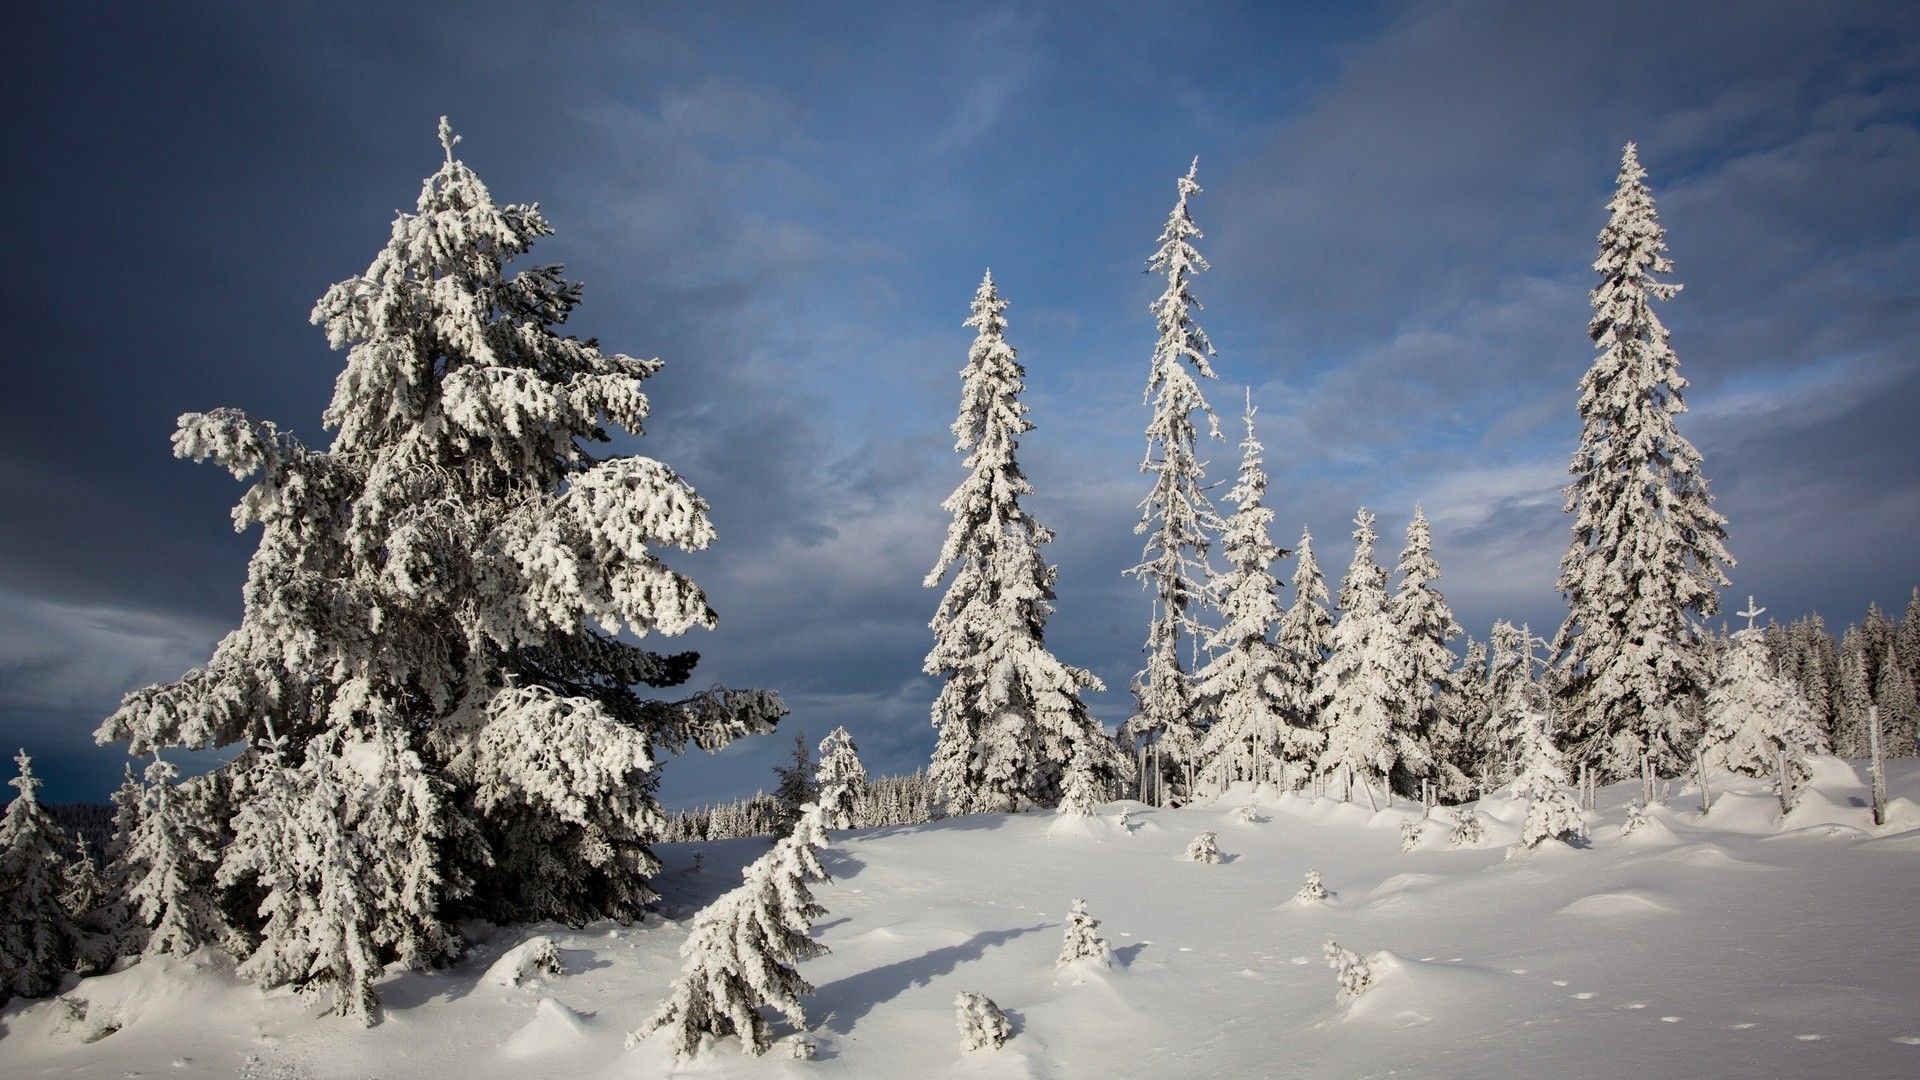 寒冷冬季优美雪景自然风景高清桌面壁纸